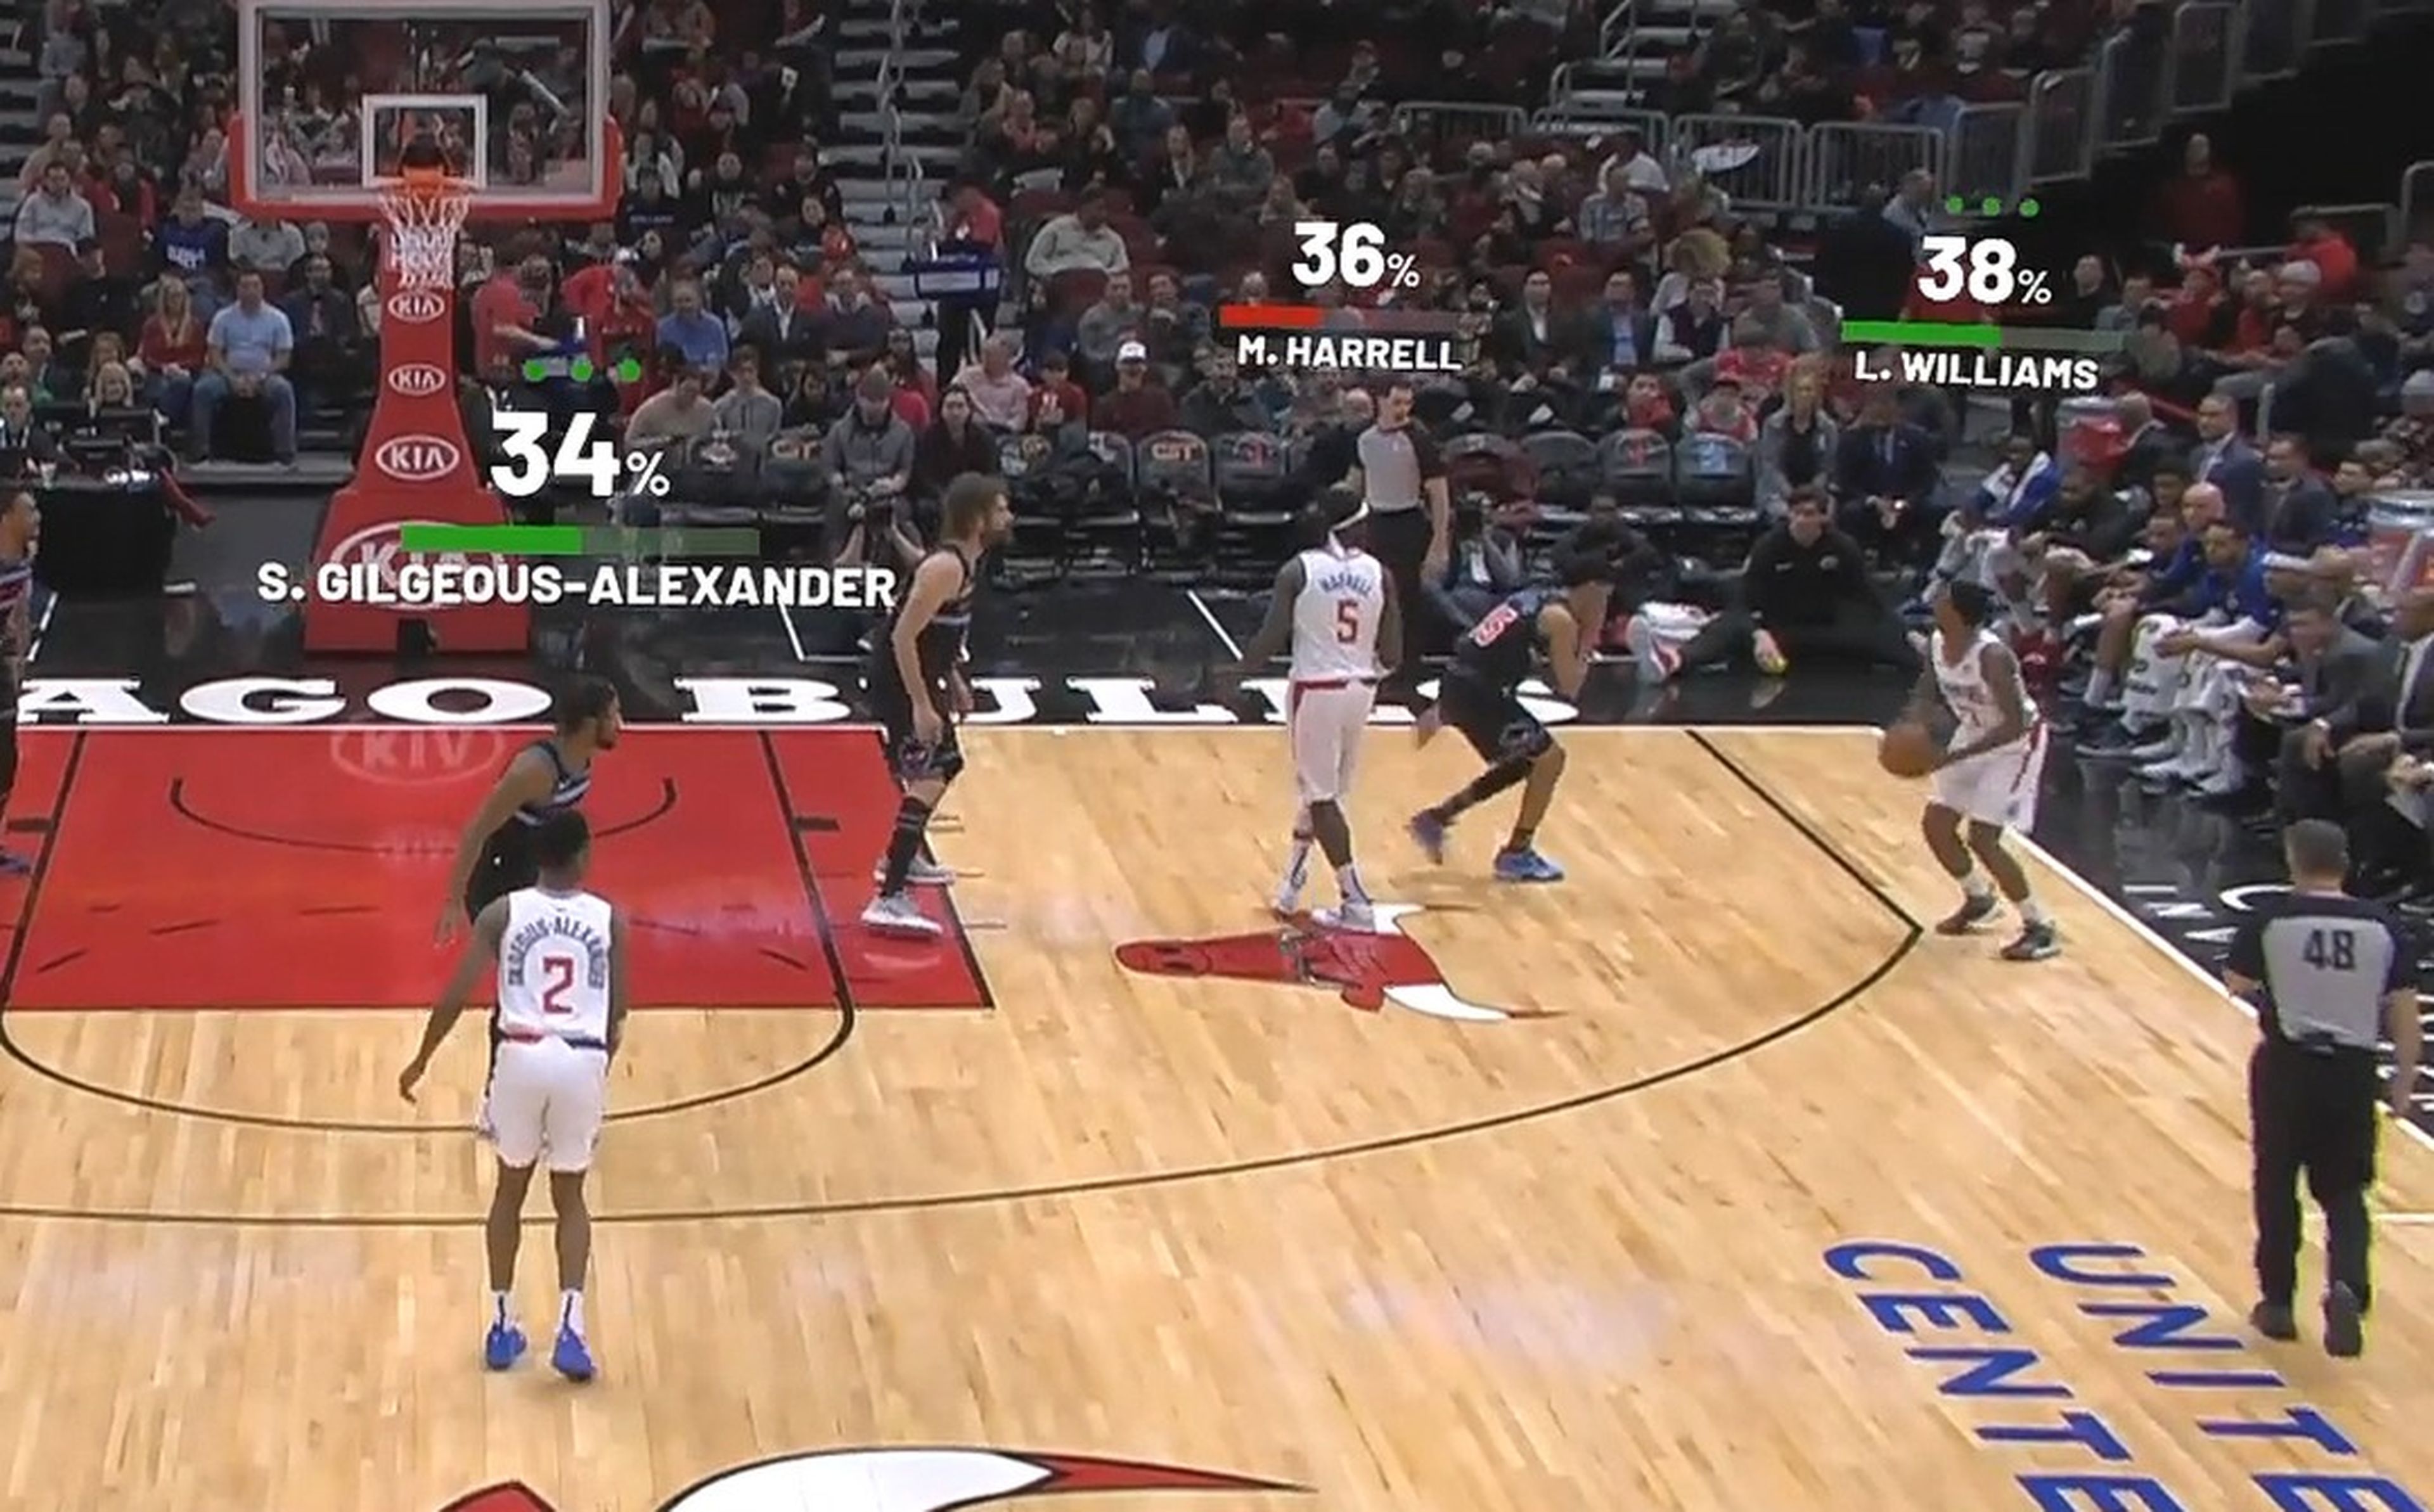 La NBA estrena la realidad aumentada en las retransmisiones, como un videojuego